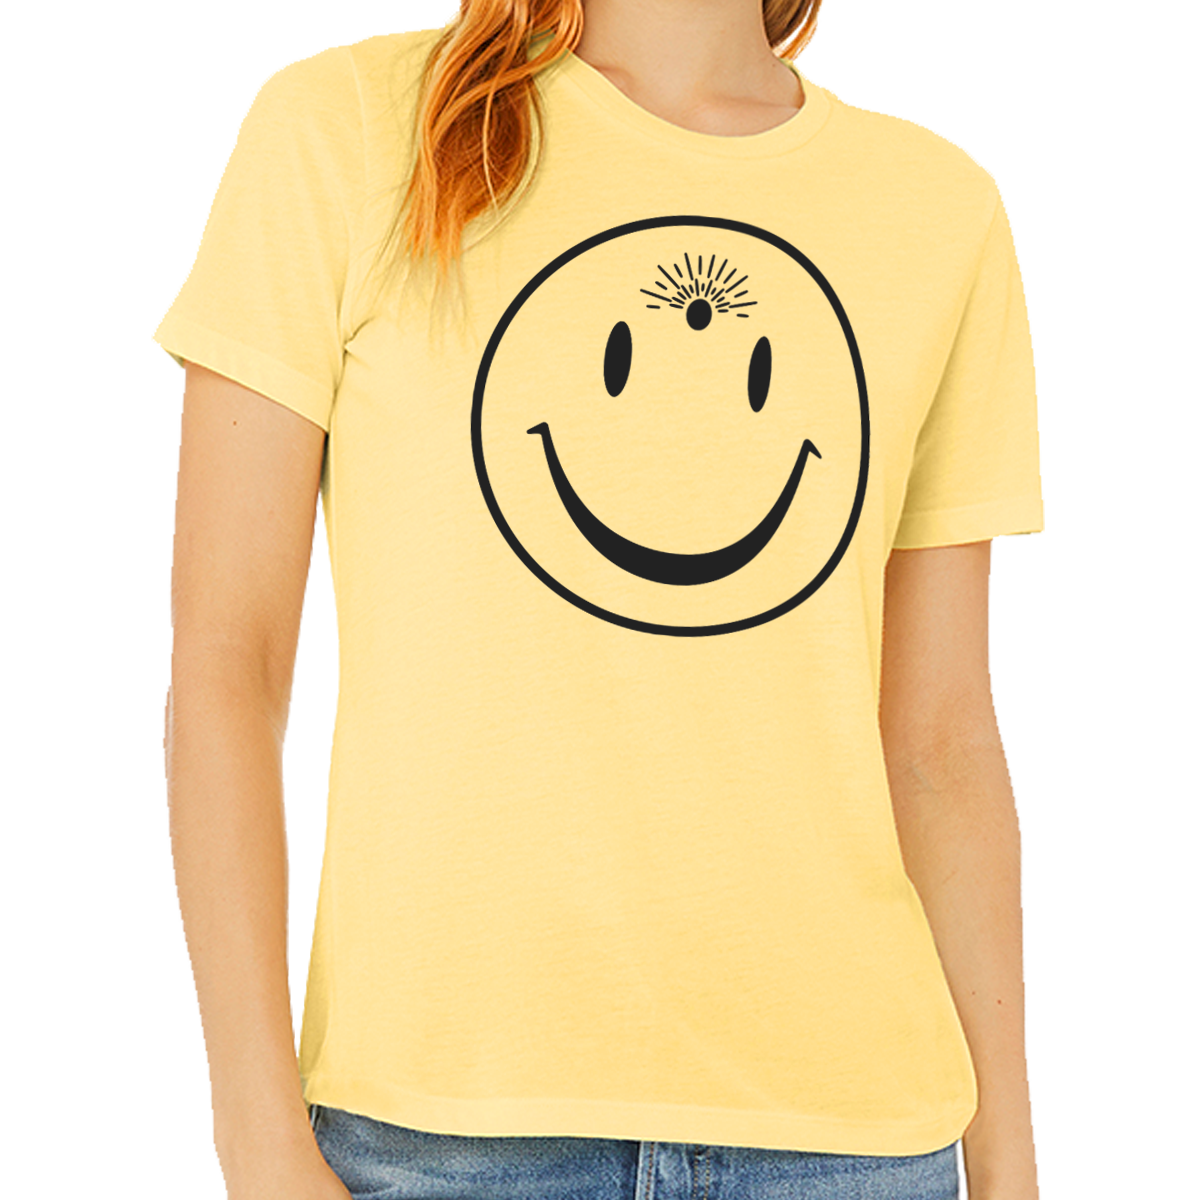 Third Eye Smile Triblend T-Shirt